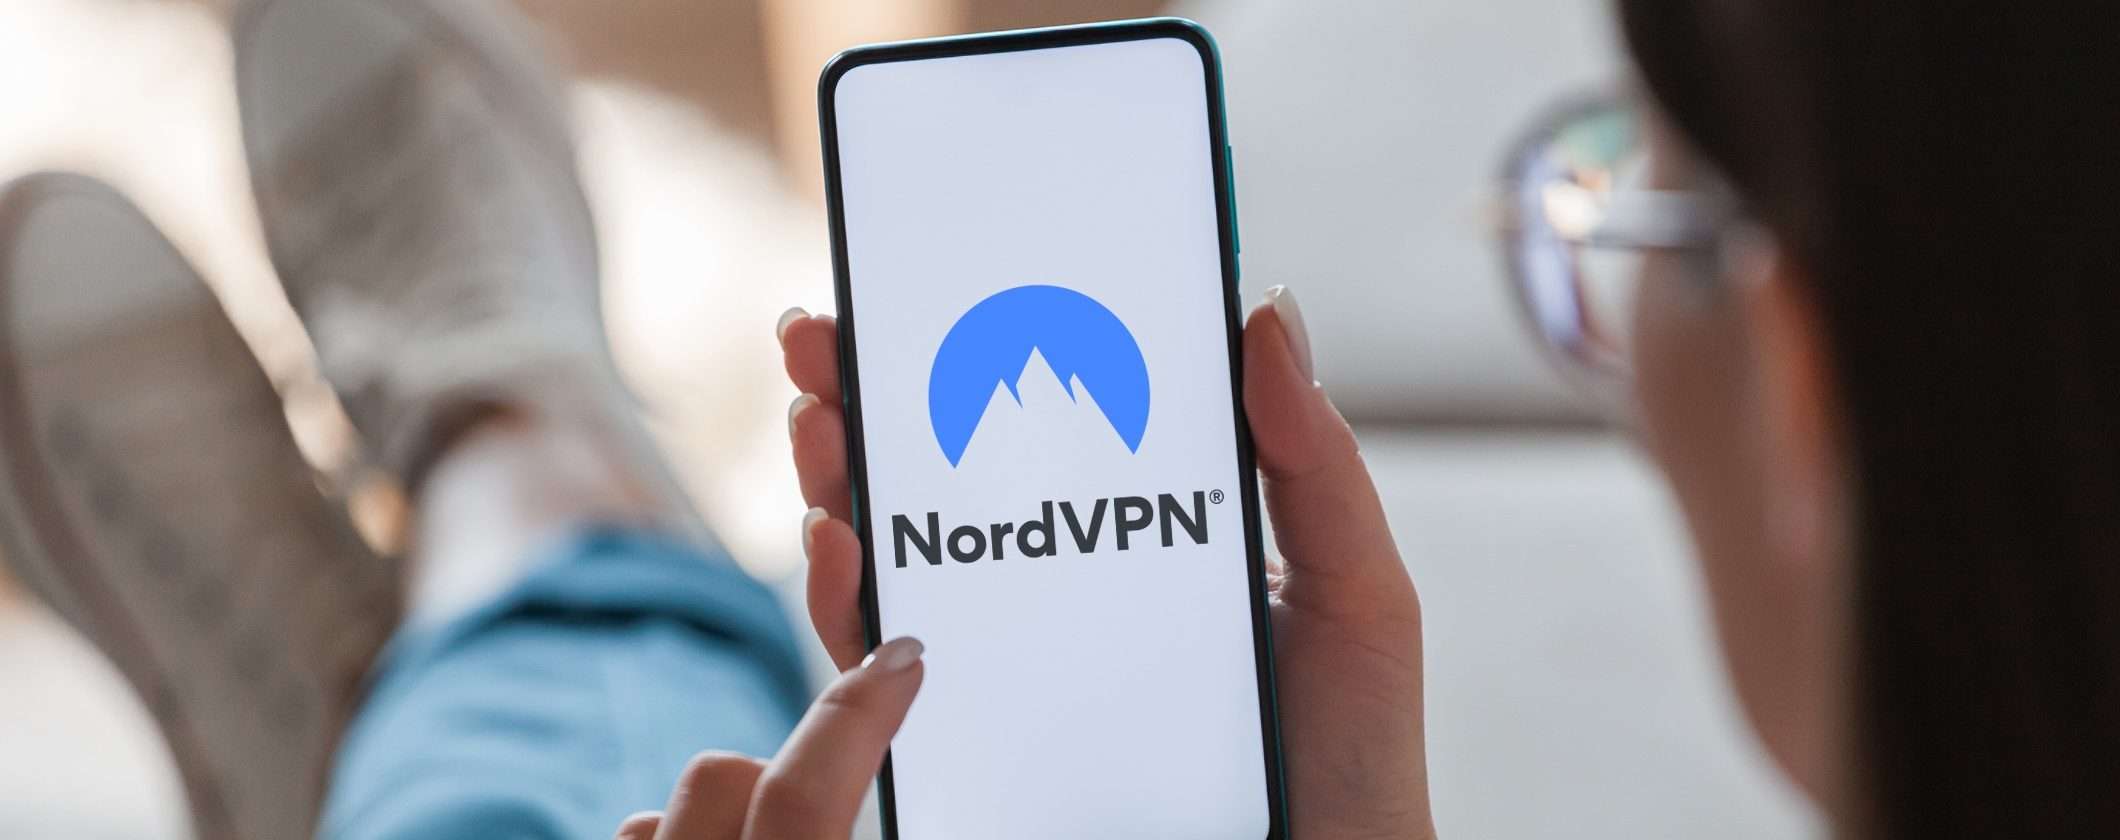 VPN compatibile e leggera? NordVPN è la soluzione giusta